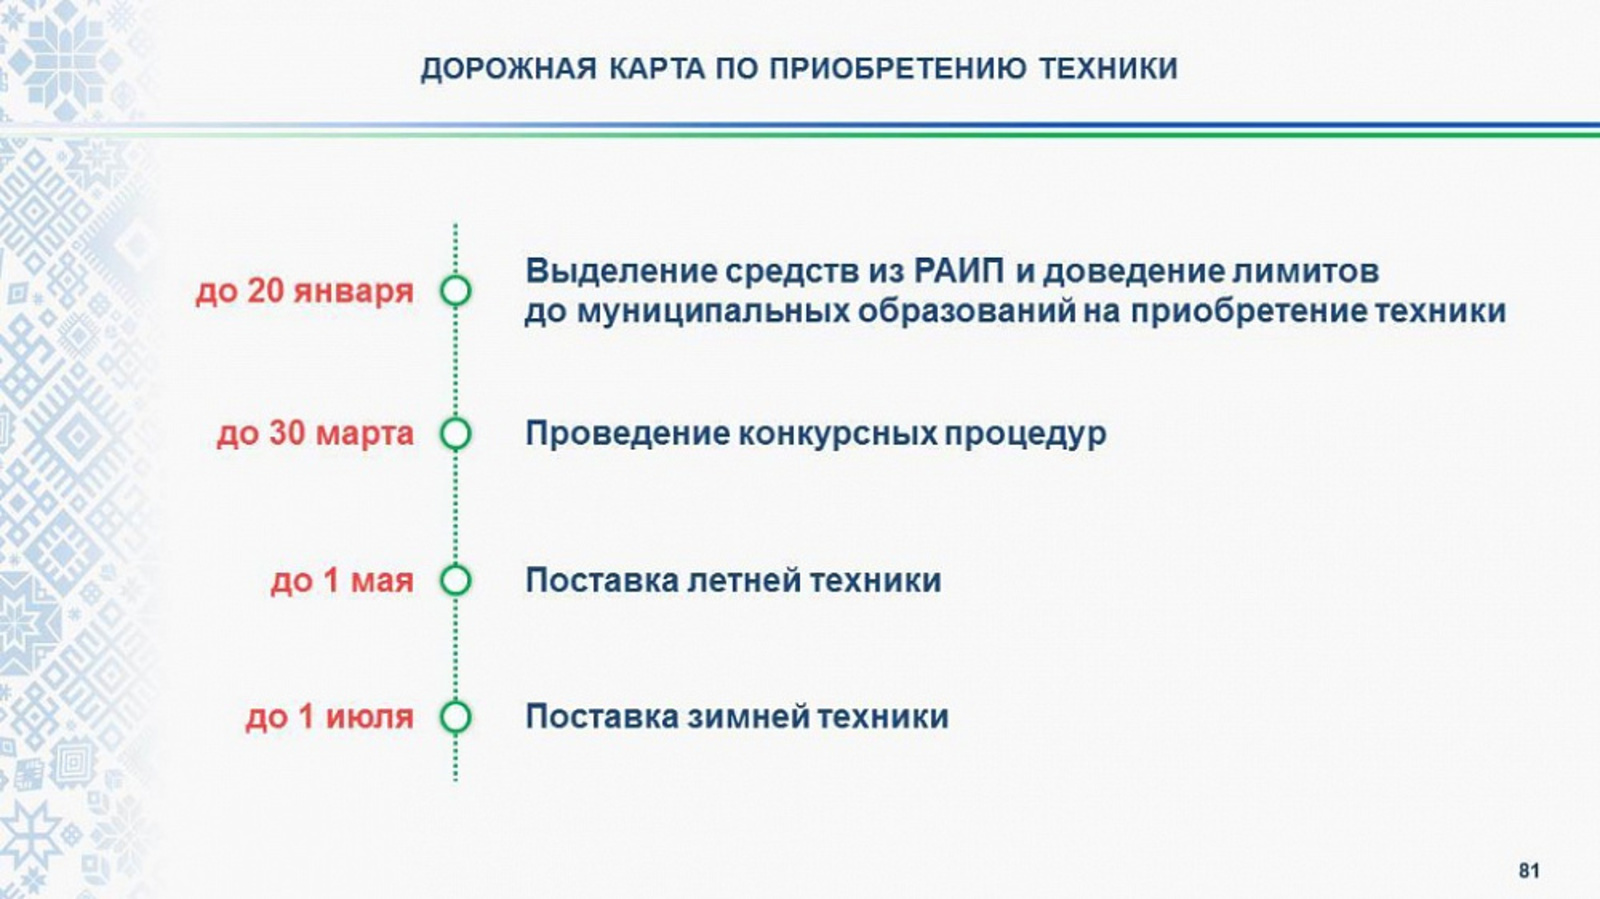 В 2022 году Башкортостан направит 1,4 млрд рублей на закупку коммунальной техники для нужд муниципалитетов